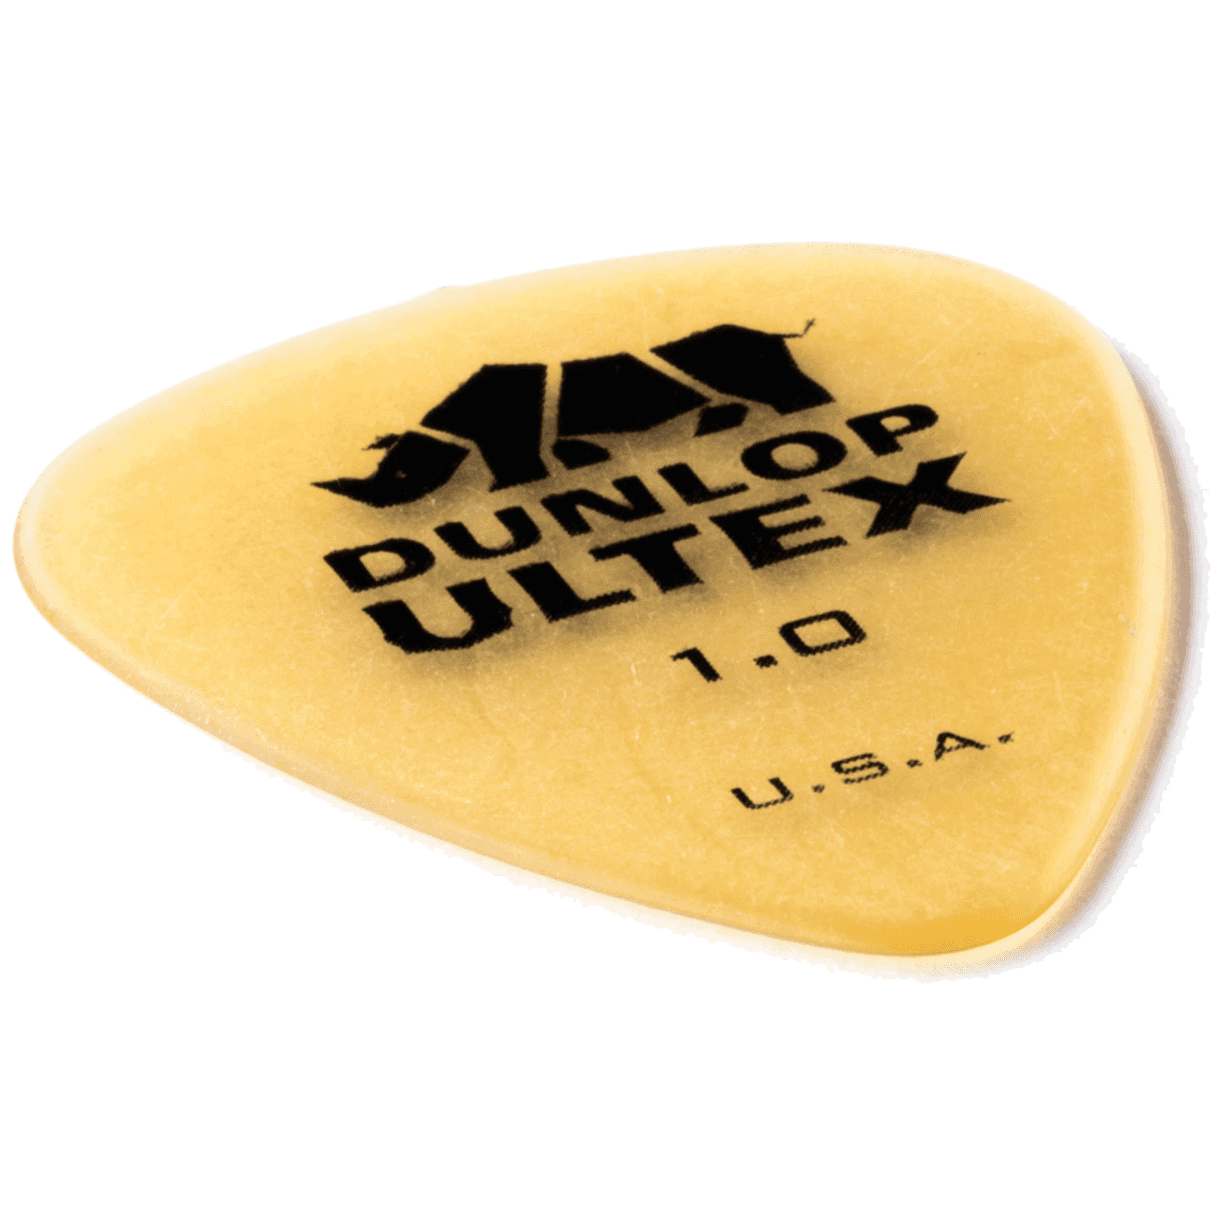 Dunlop Ultex Standard 1.00 Player's Pack 6 Stück 4